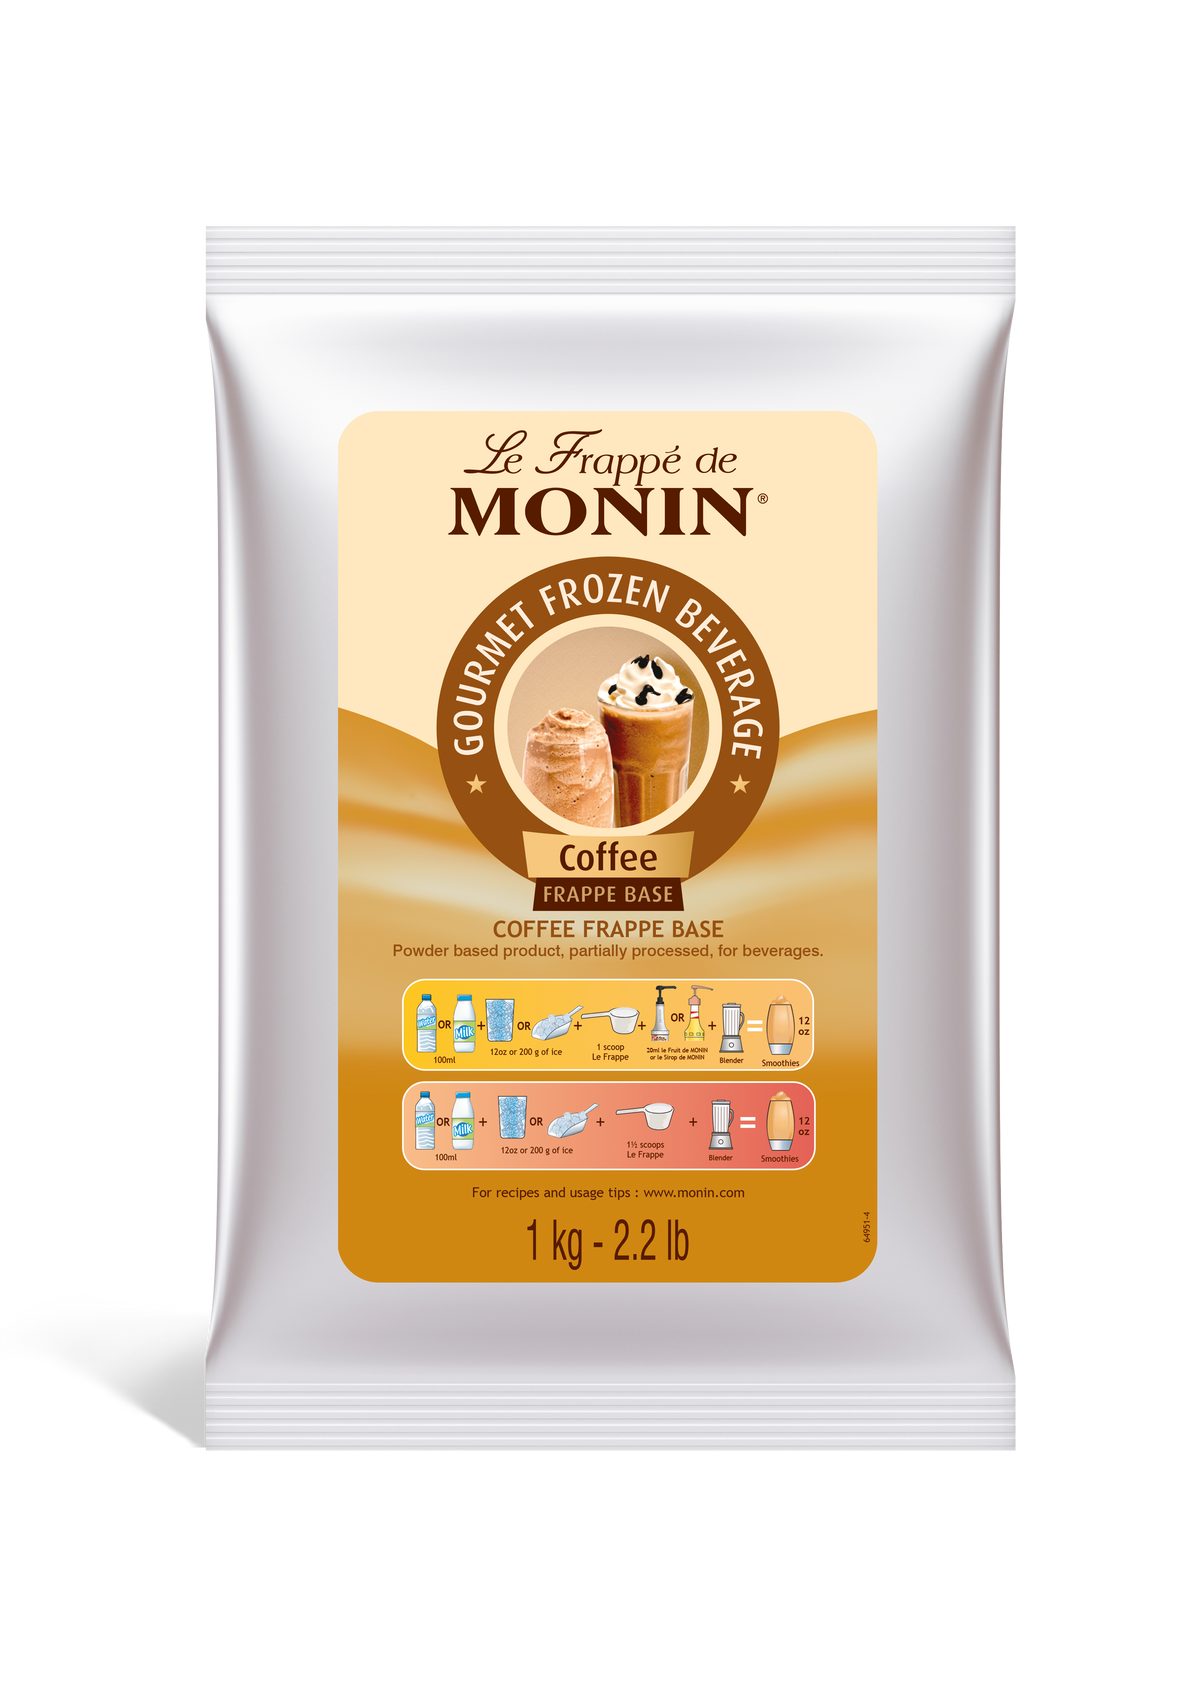 Le Frappé de MONIN Coffee